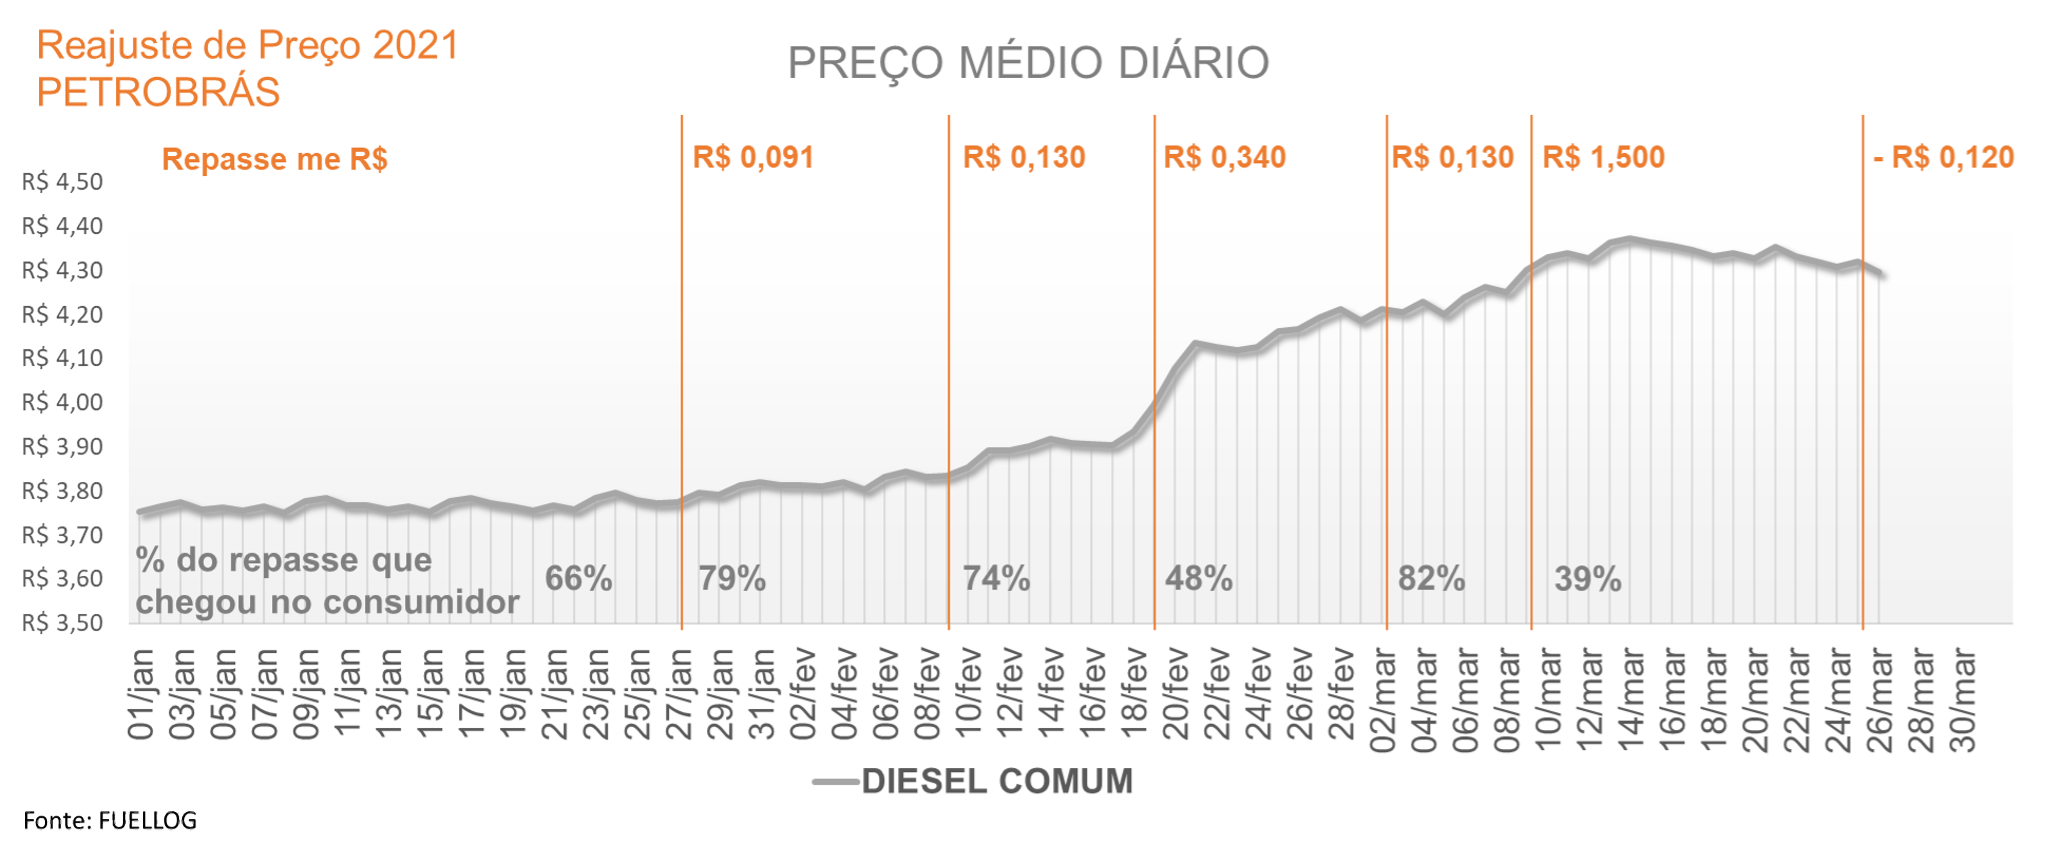 Tabela com o repasse do reajuste no preço do diesel comum em 2021